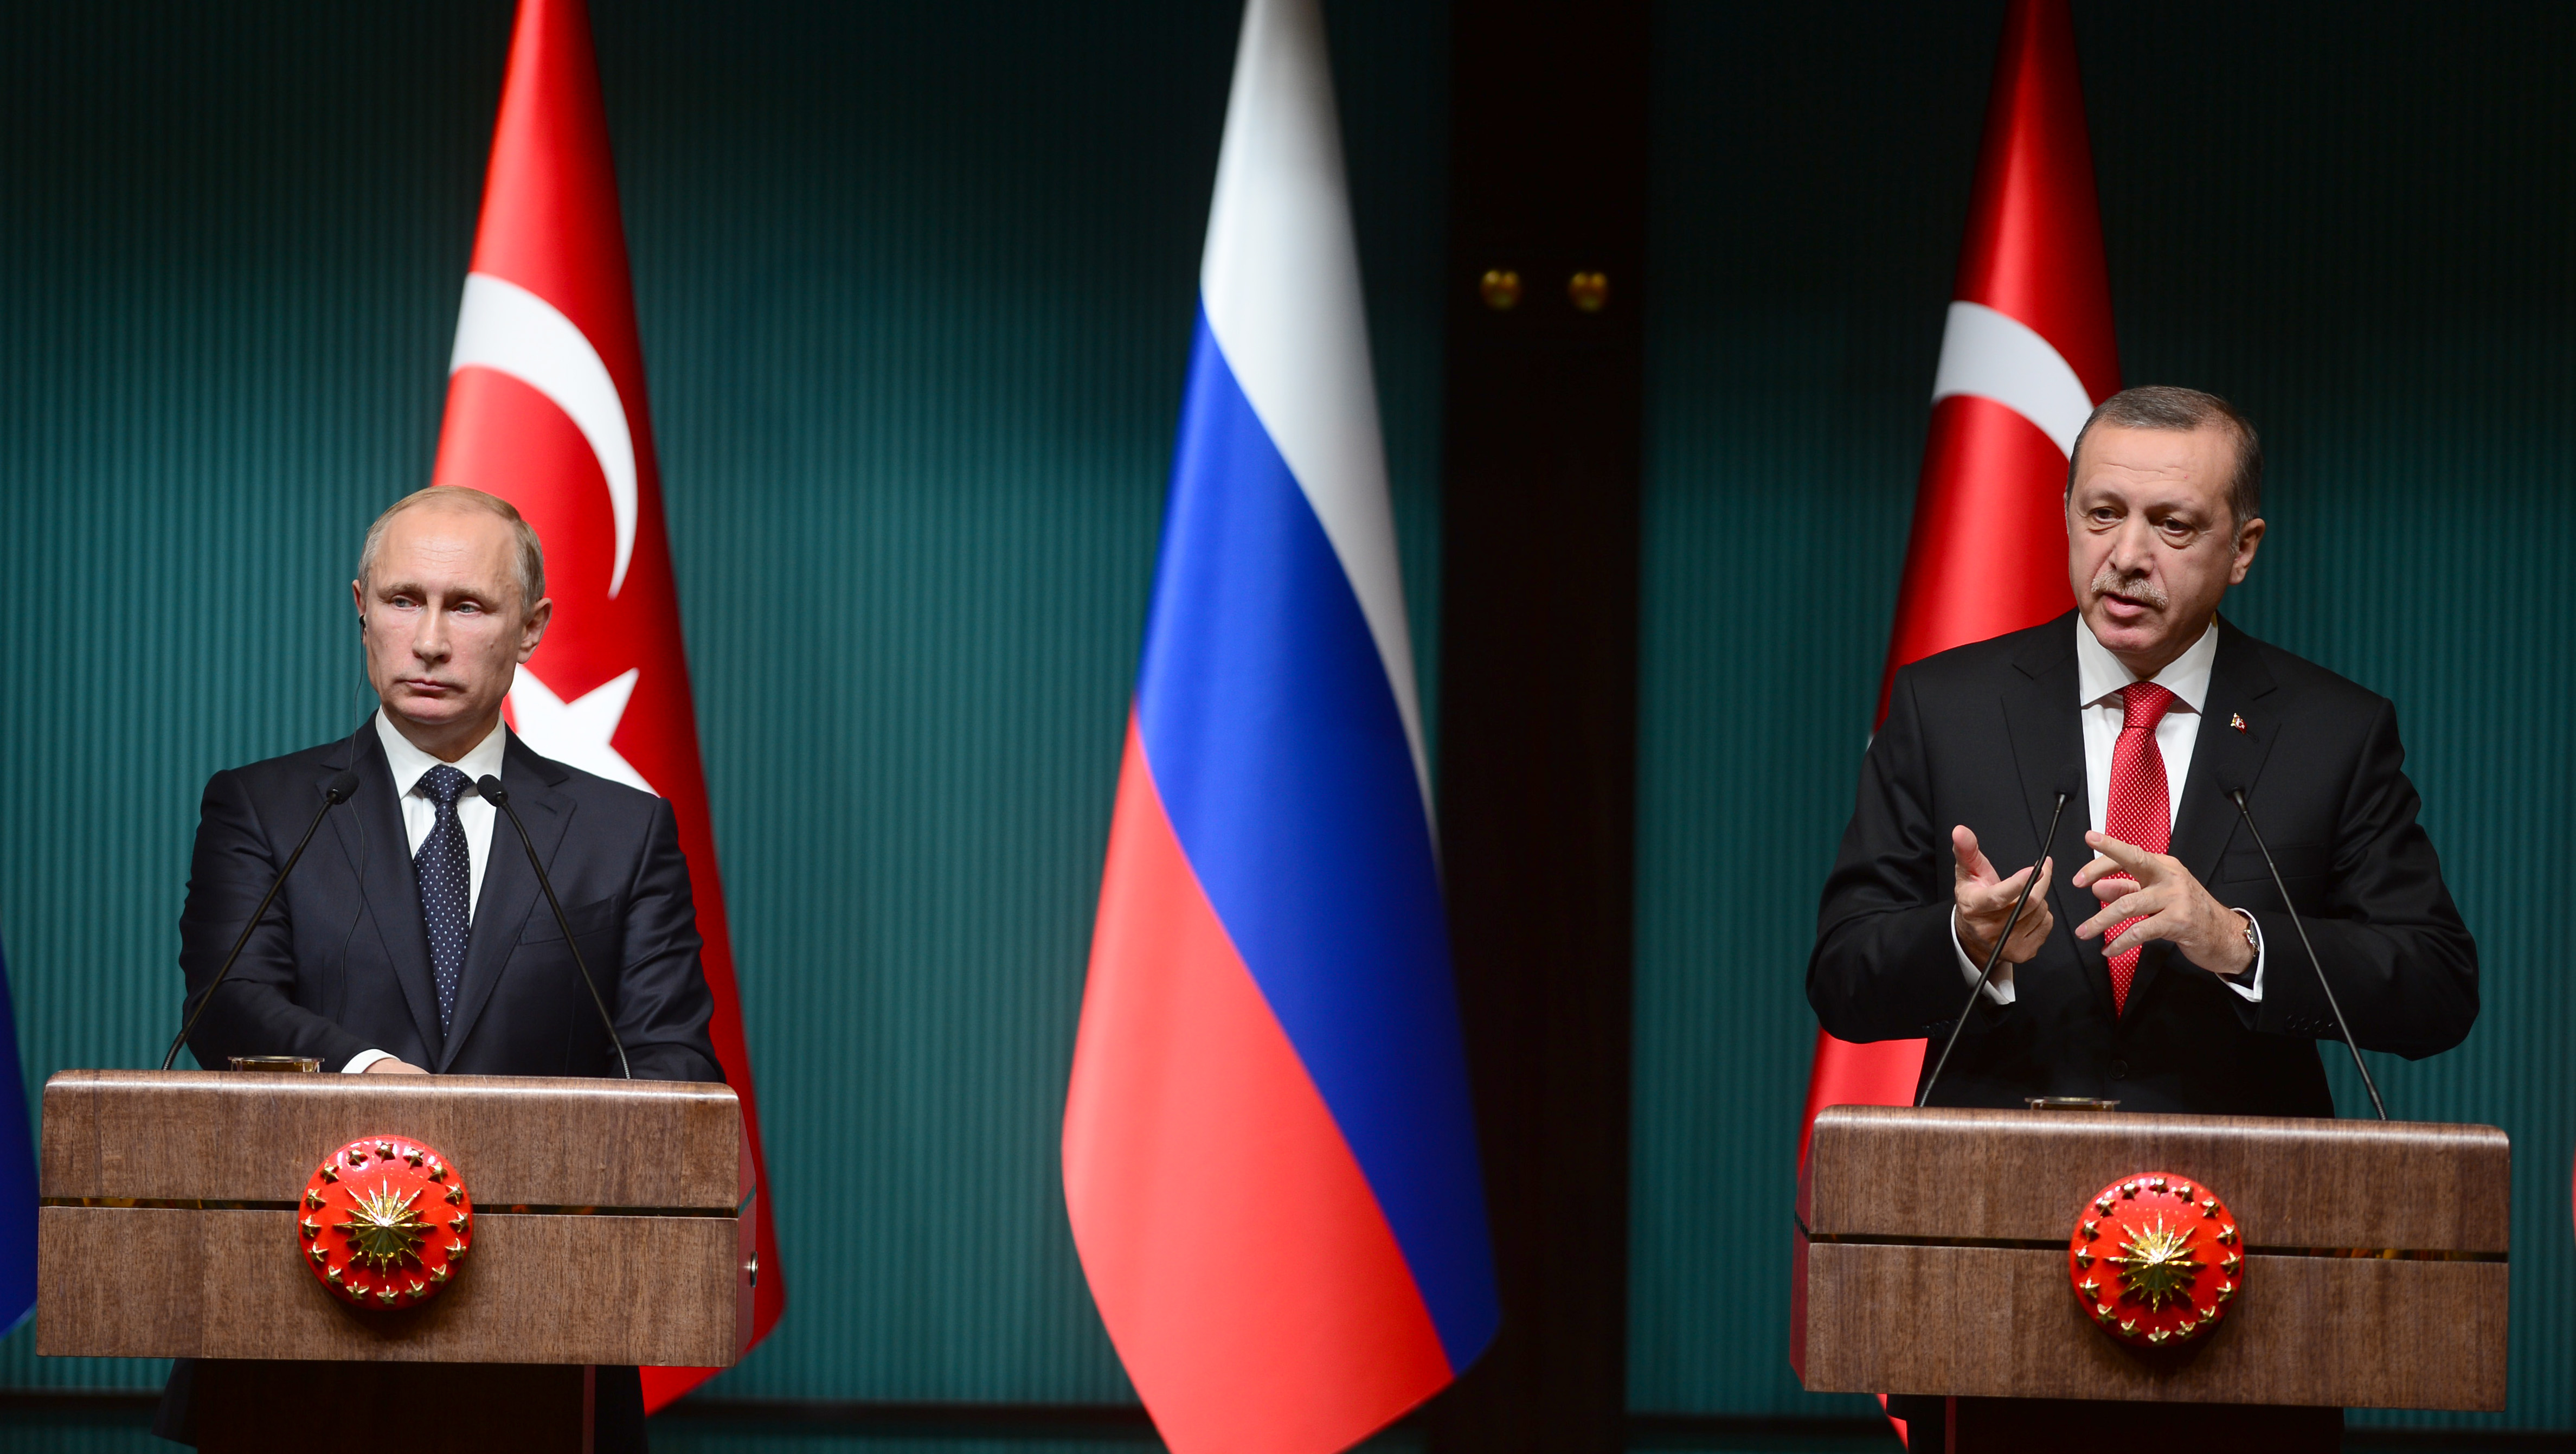 سياسي| اتصالات تركية روسية لمناقشة اجتماعات الأستانة... والأكراد يؤكدون عدم دعوتهم